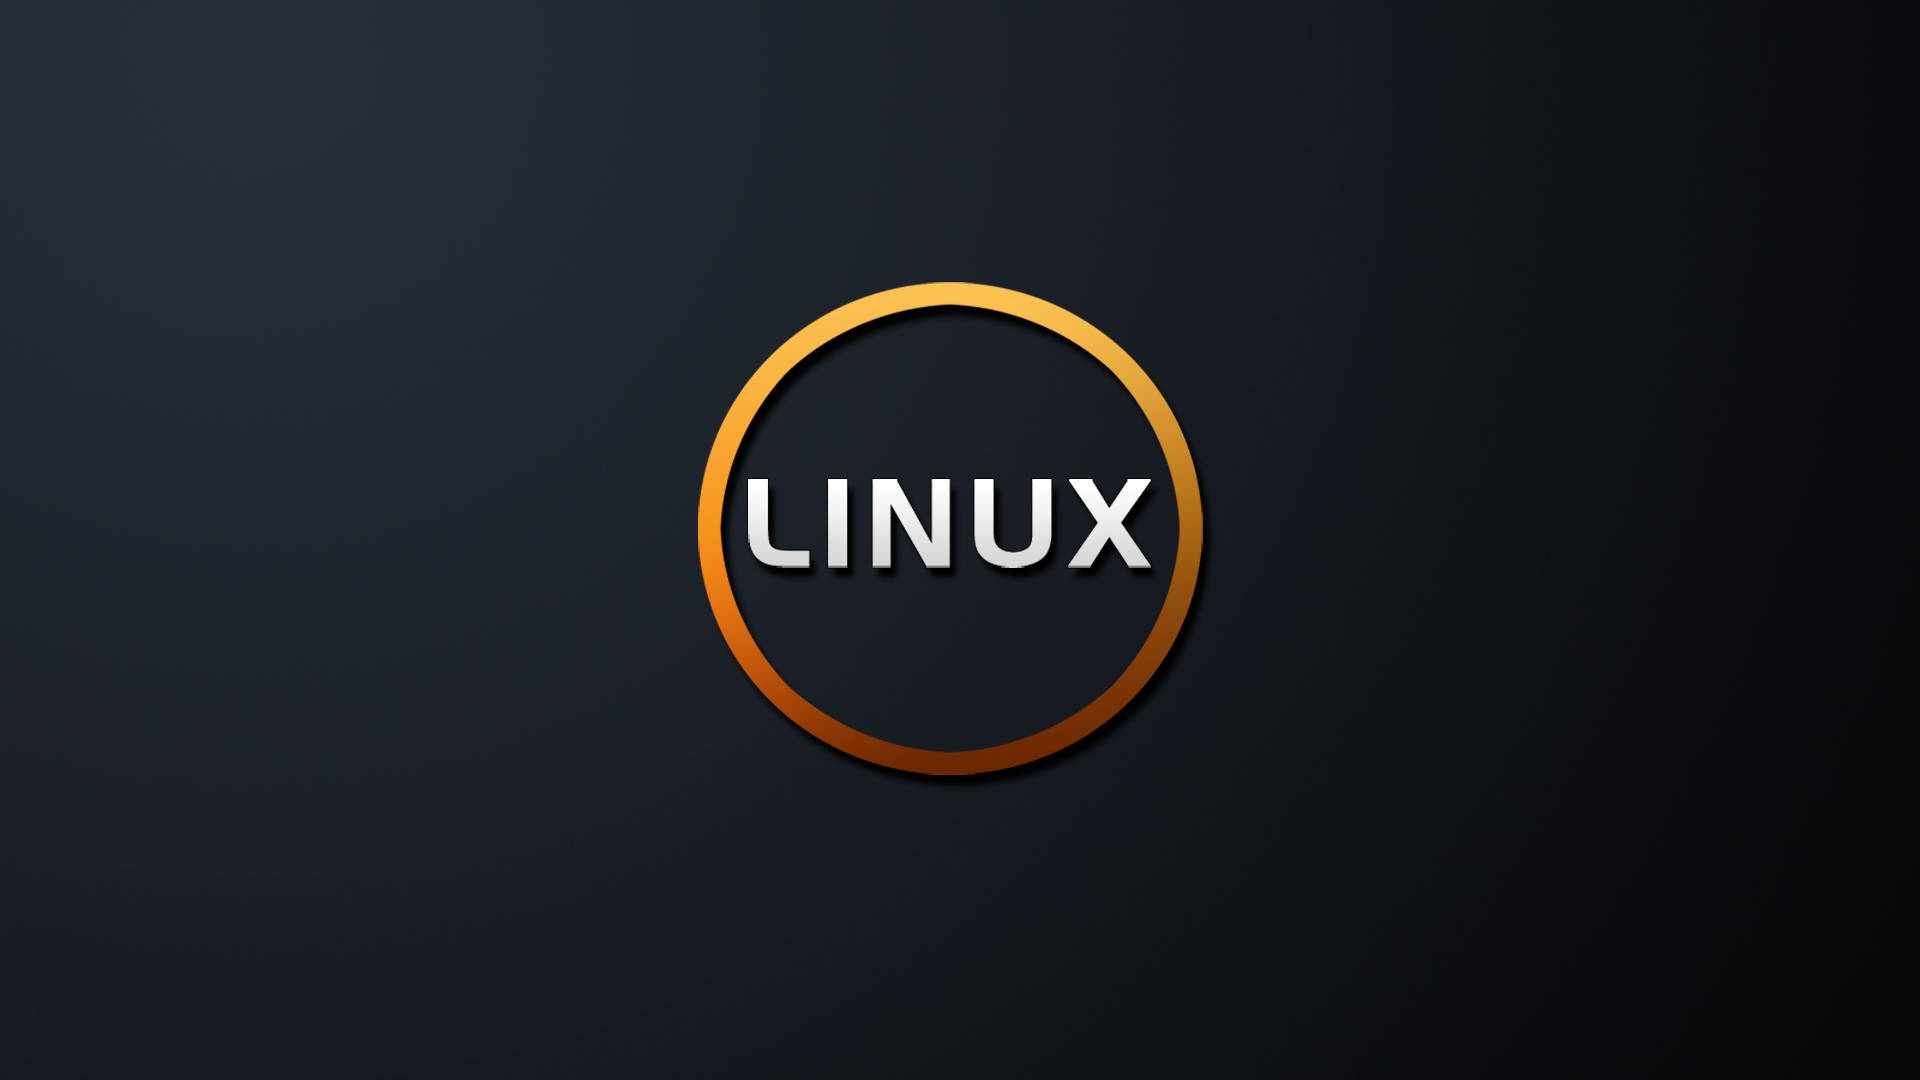 Linux Os Orange Circle Wallpaper